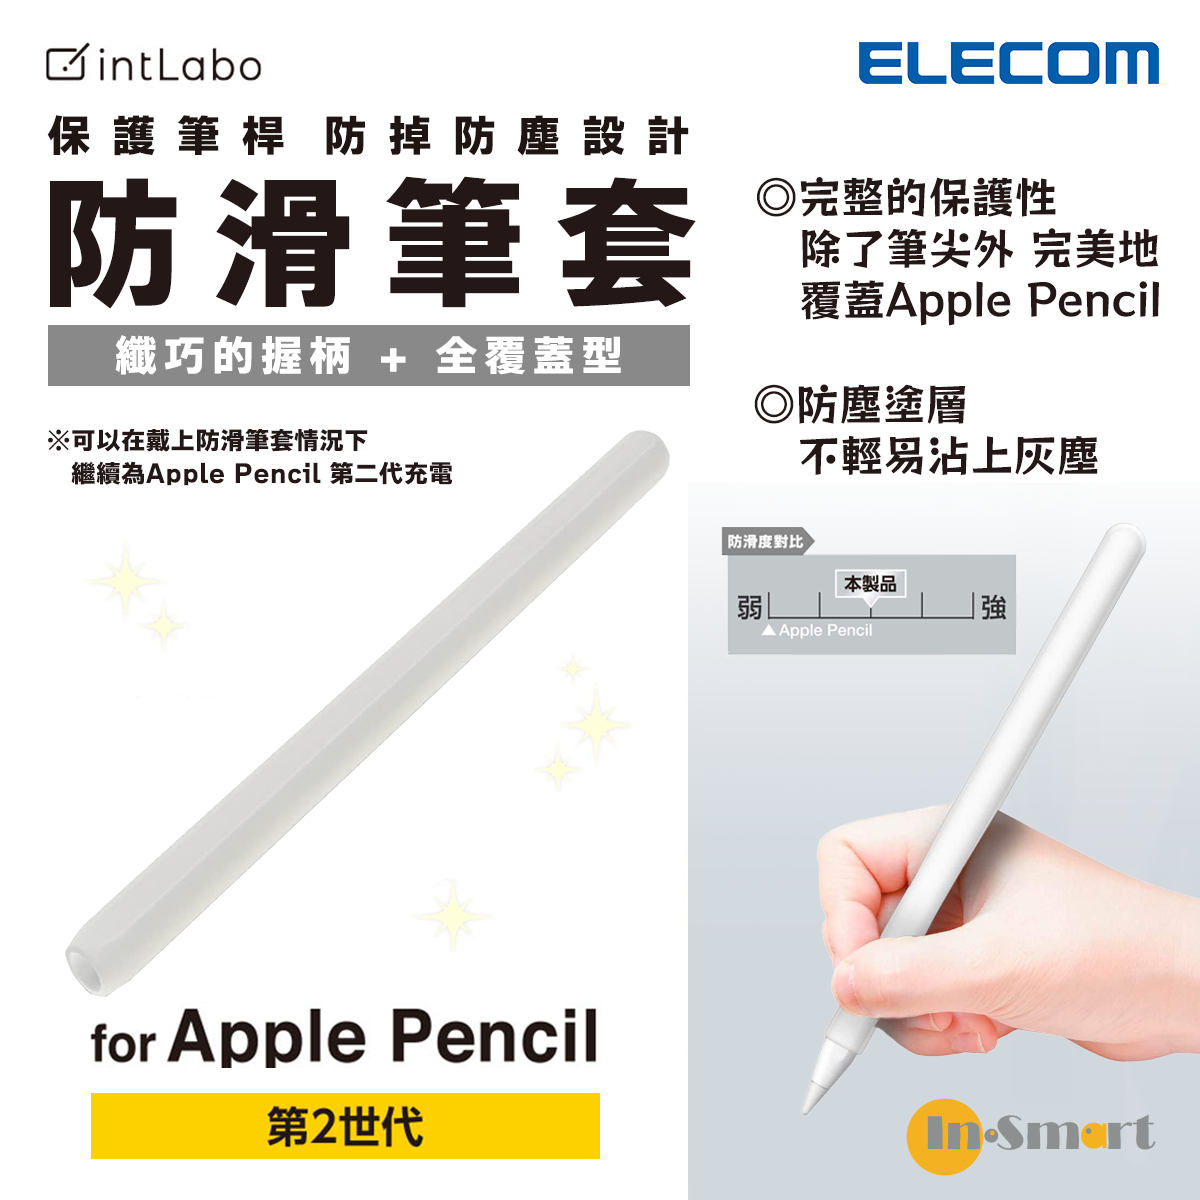 9750円 セール品 Apple Pencil 第2世代